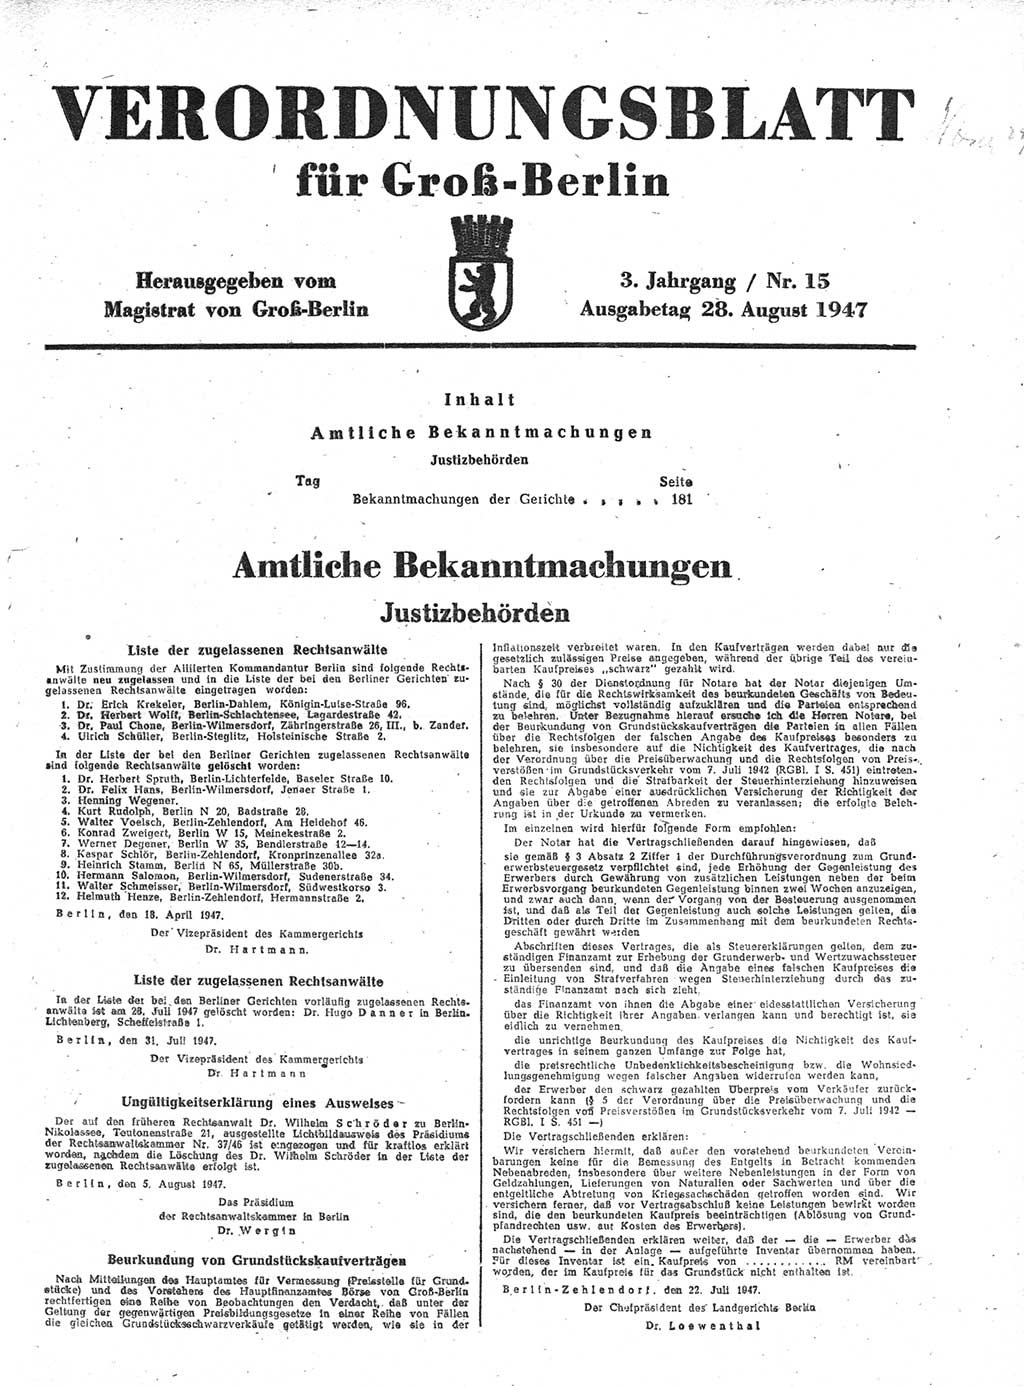 Verordnungsblatt (VOBl.) für Groß-Berlin 1947, Seite 181 (VOBl. Bln. 1947, S. 181)